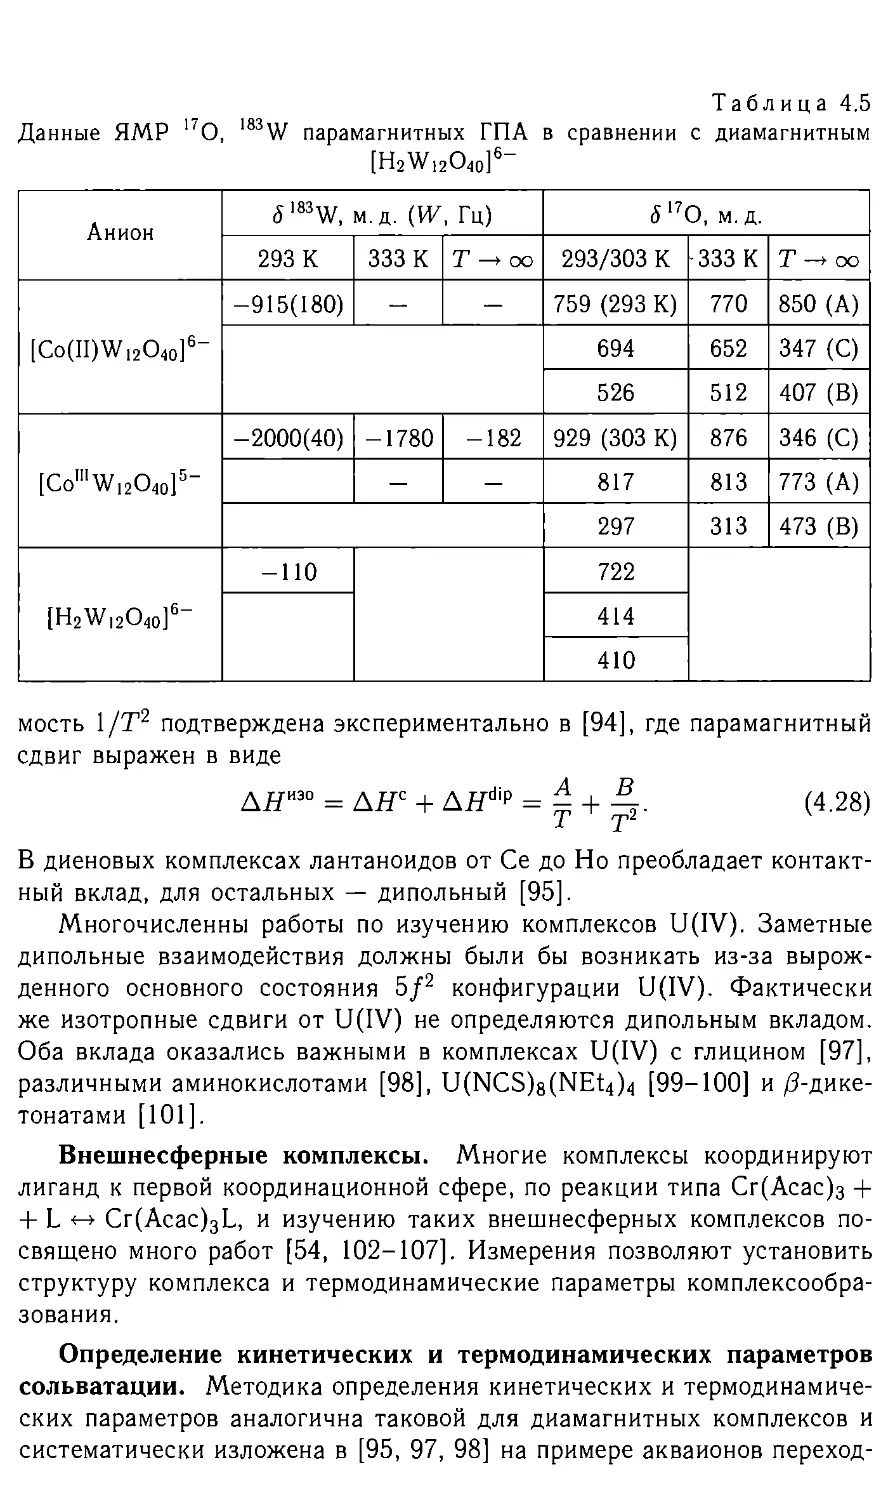 4.2.4. Внешнесферные комплексы
4.2.5. Определение кинети¬ческих и термодинамических параметров сольватации